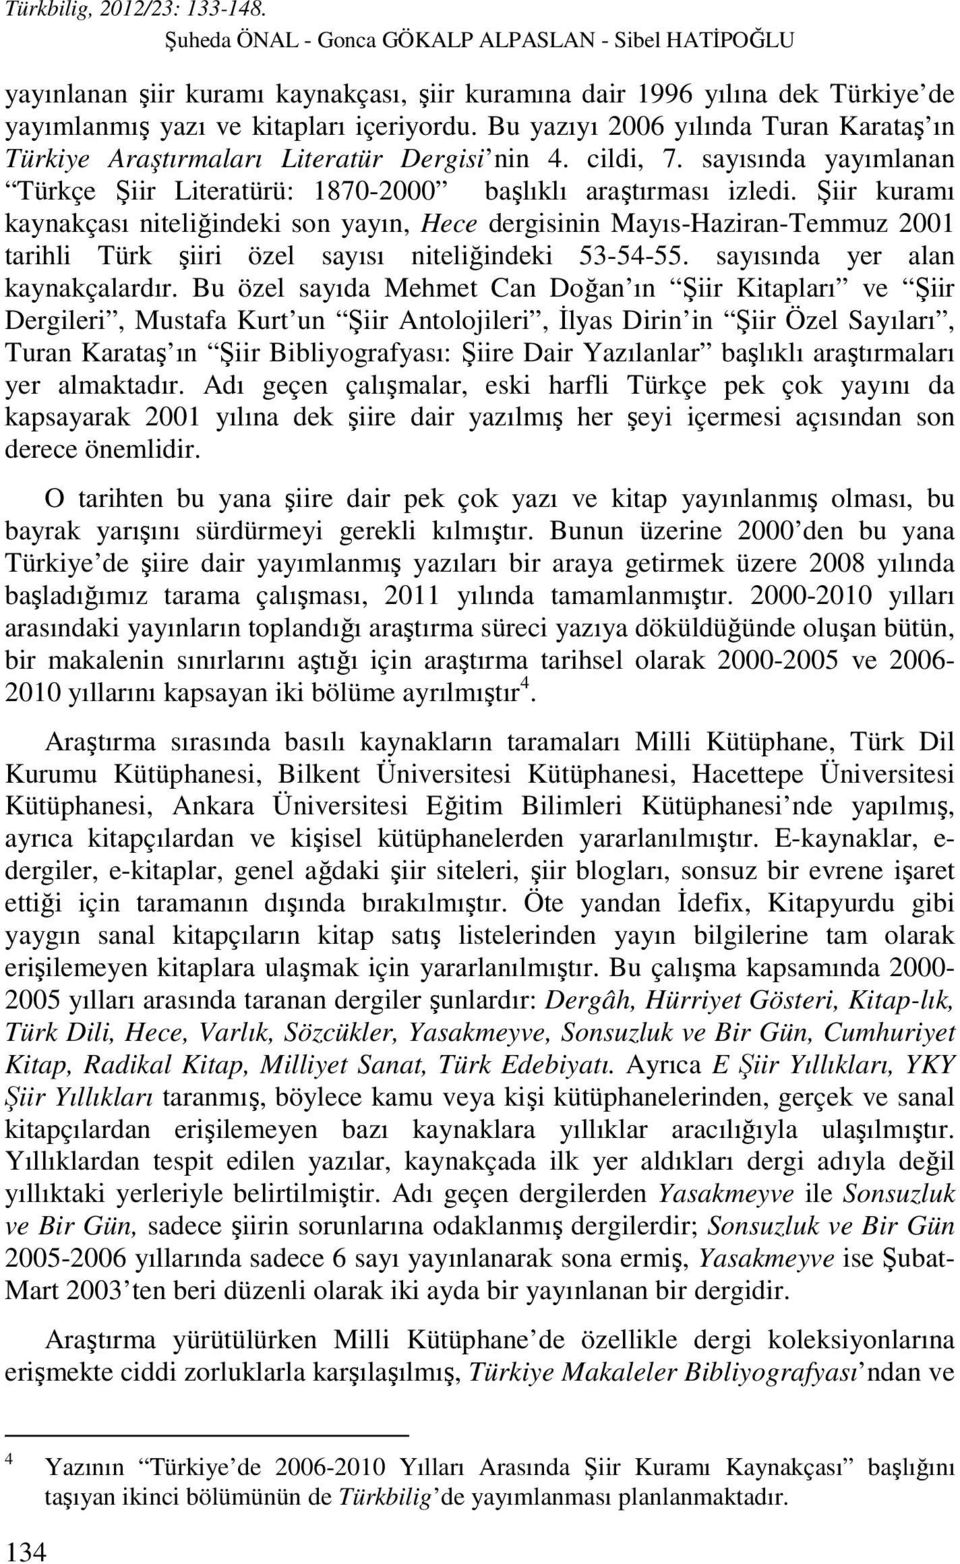 Şiir kuramı kaynakçası niteliğindeki son yayın, Hece dergisinin Mayıs-Haziran-Temmuz 2001 tarihli Türk şiiri özel sayısı niteliğindeki 53-54-55. sayısında yer alan kaynakçalardır.